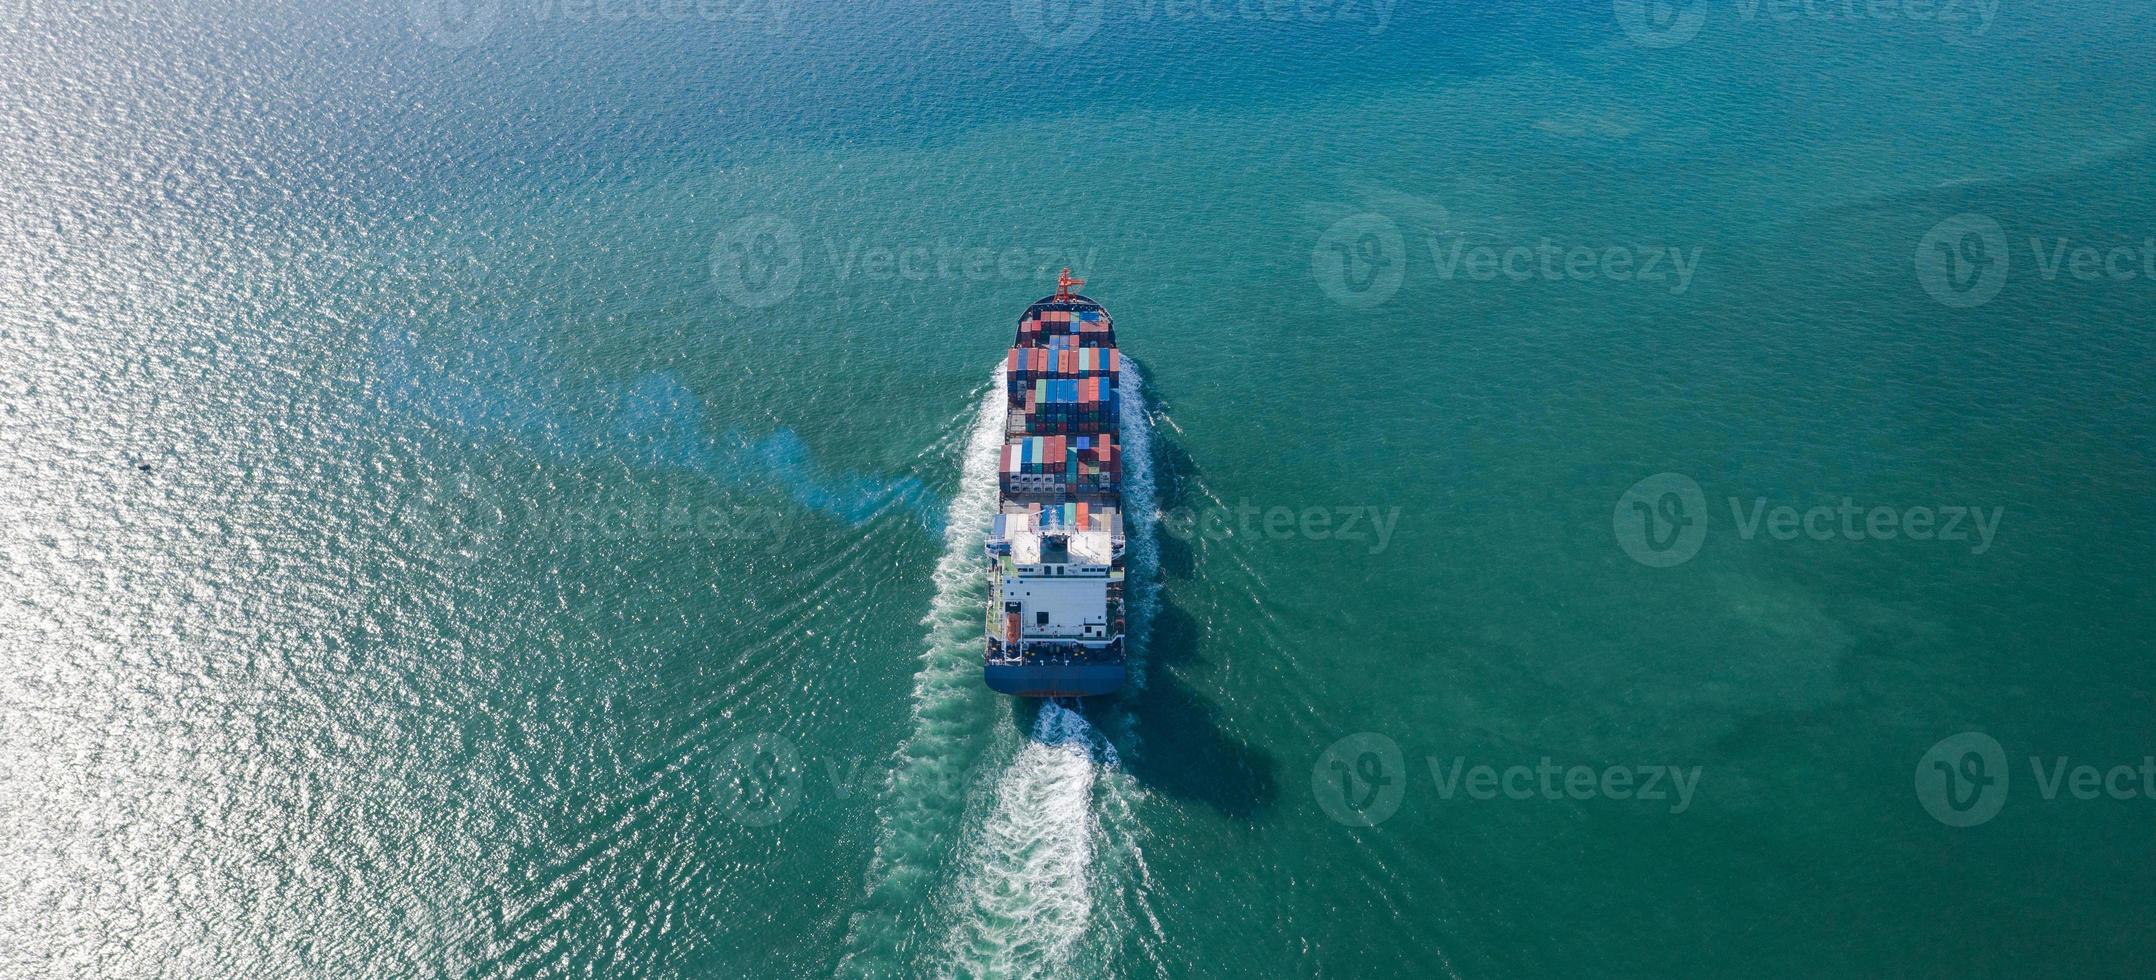 luchtfoto bovenaanzicht van grote container vrachtschip foto